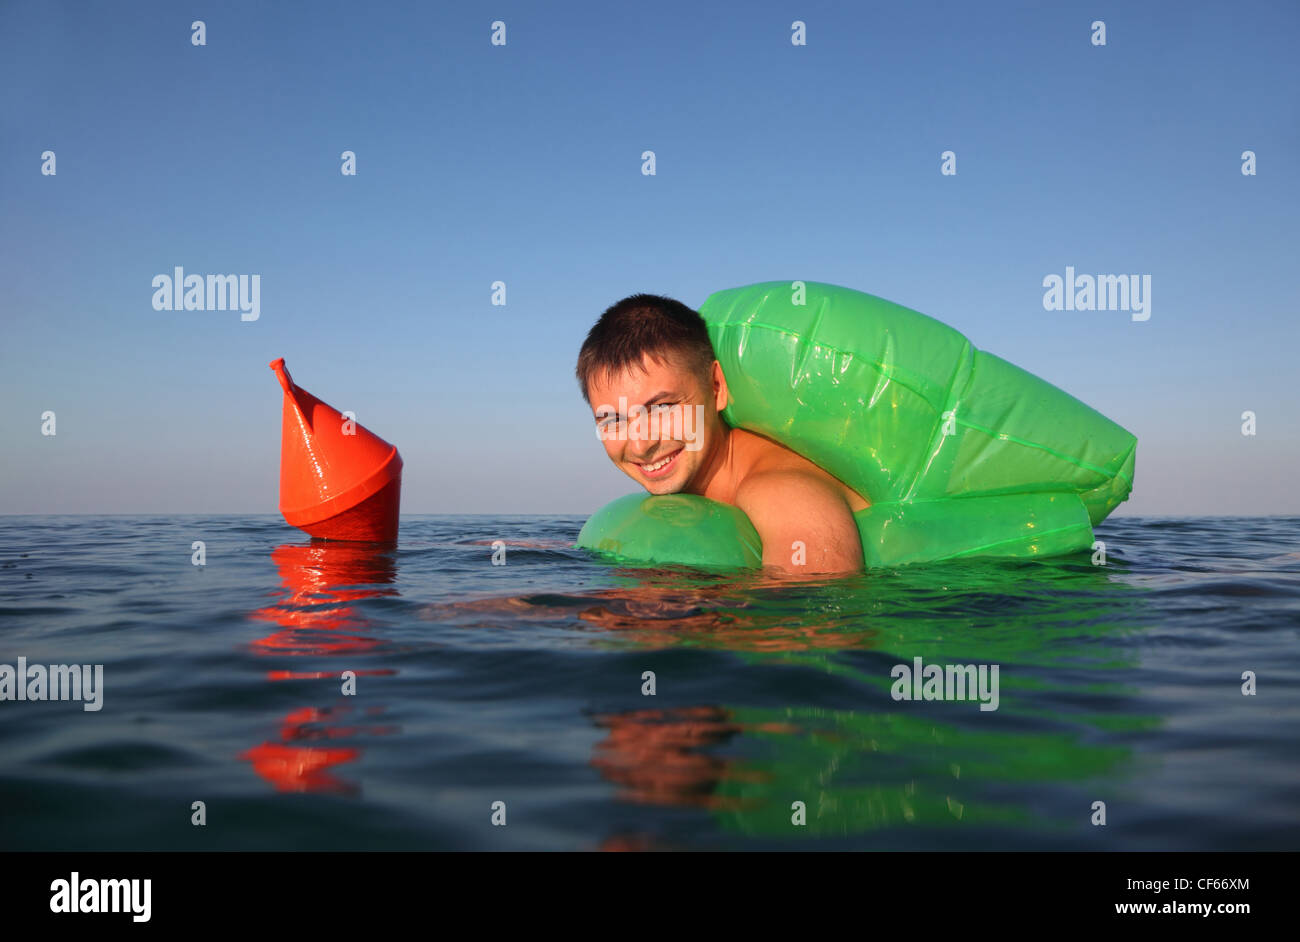 Giovane uomo nuota in mare sul verde lifeline. arancione boa di ancoraggio galleggia sul mare. Foto Stock